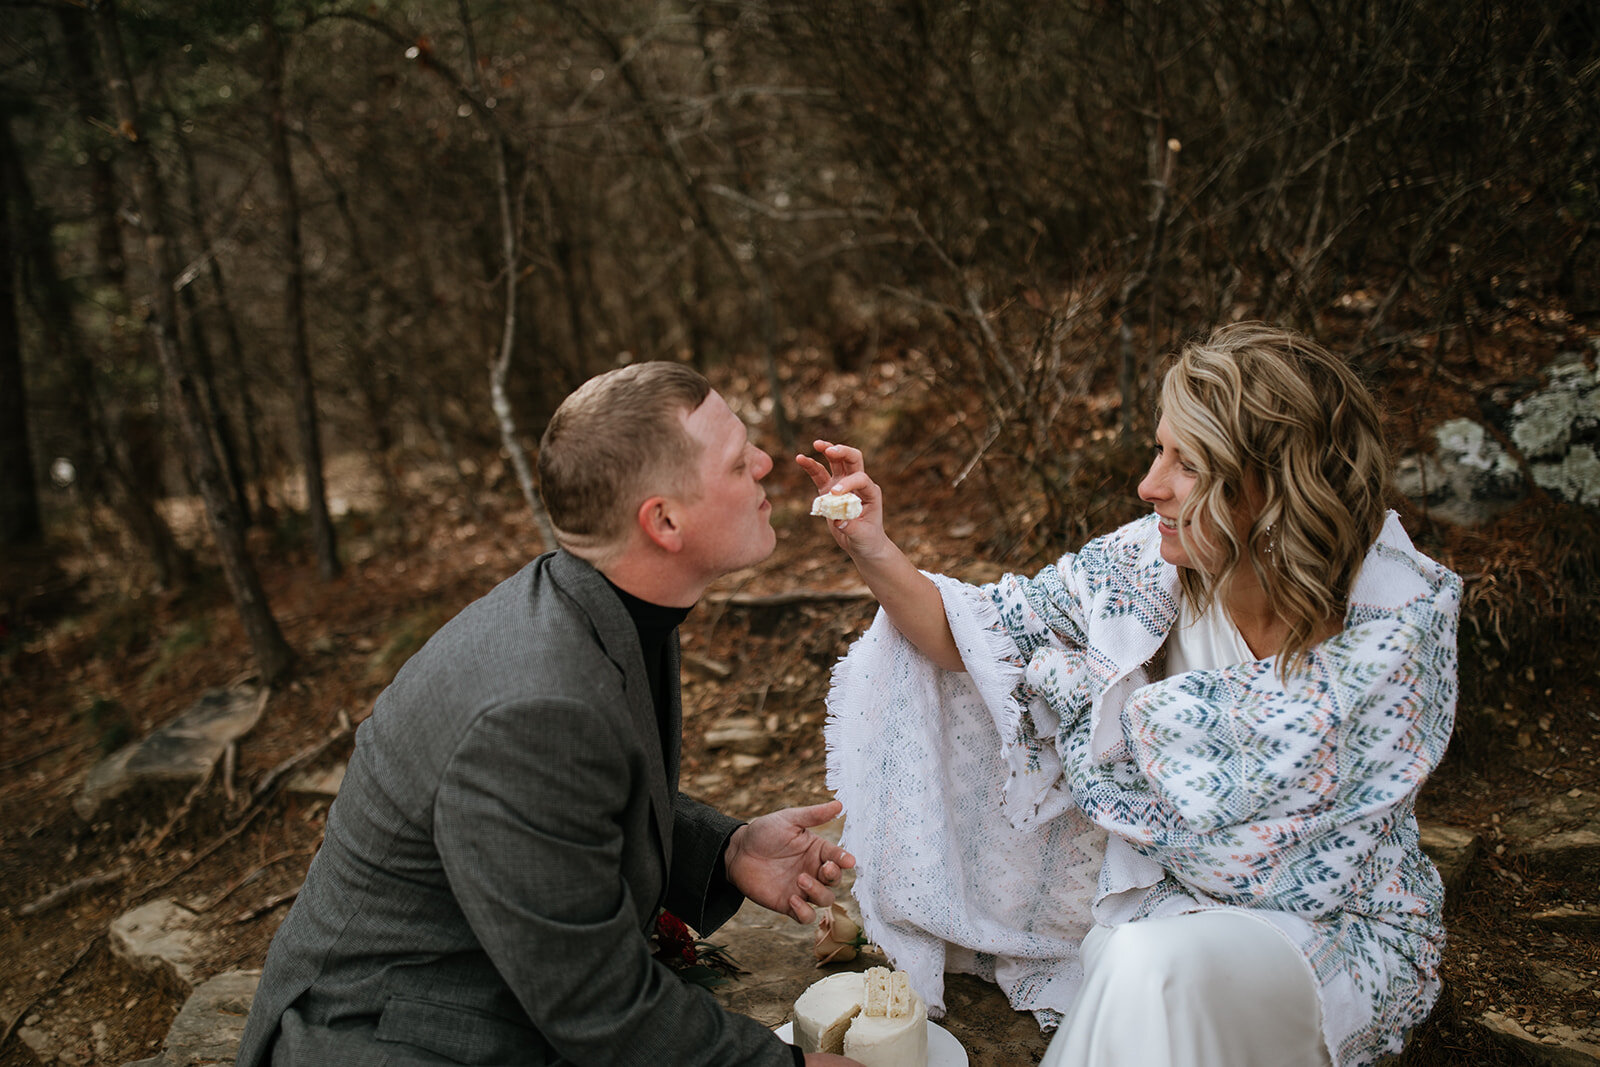 snoopers-rock-adventure-elopement-chattanooga-wedding-photographerfoster-falls-elopement-chattanooga-wedding-photographer-438_websize.jpg